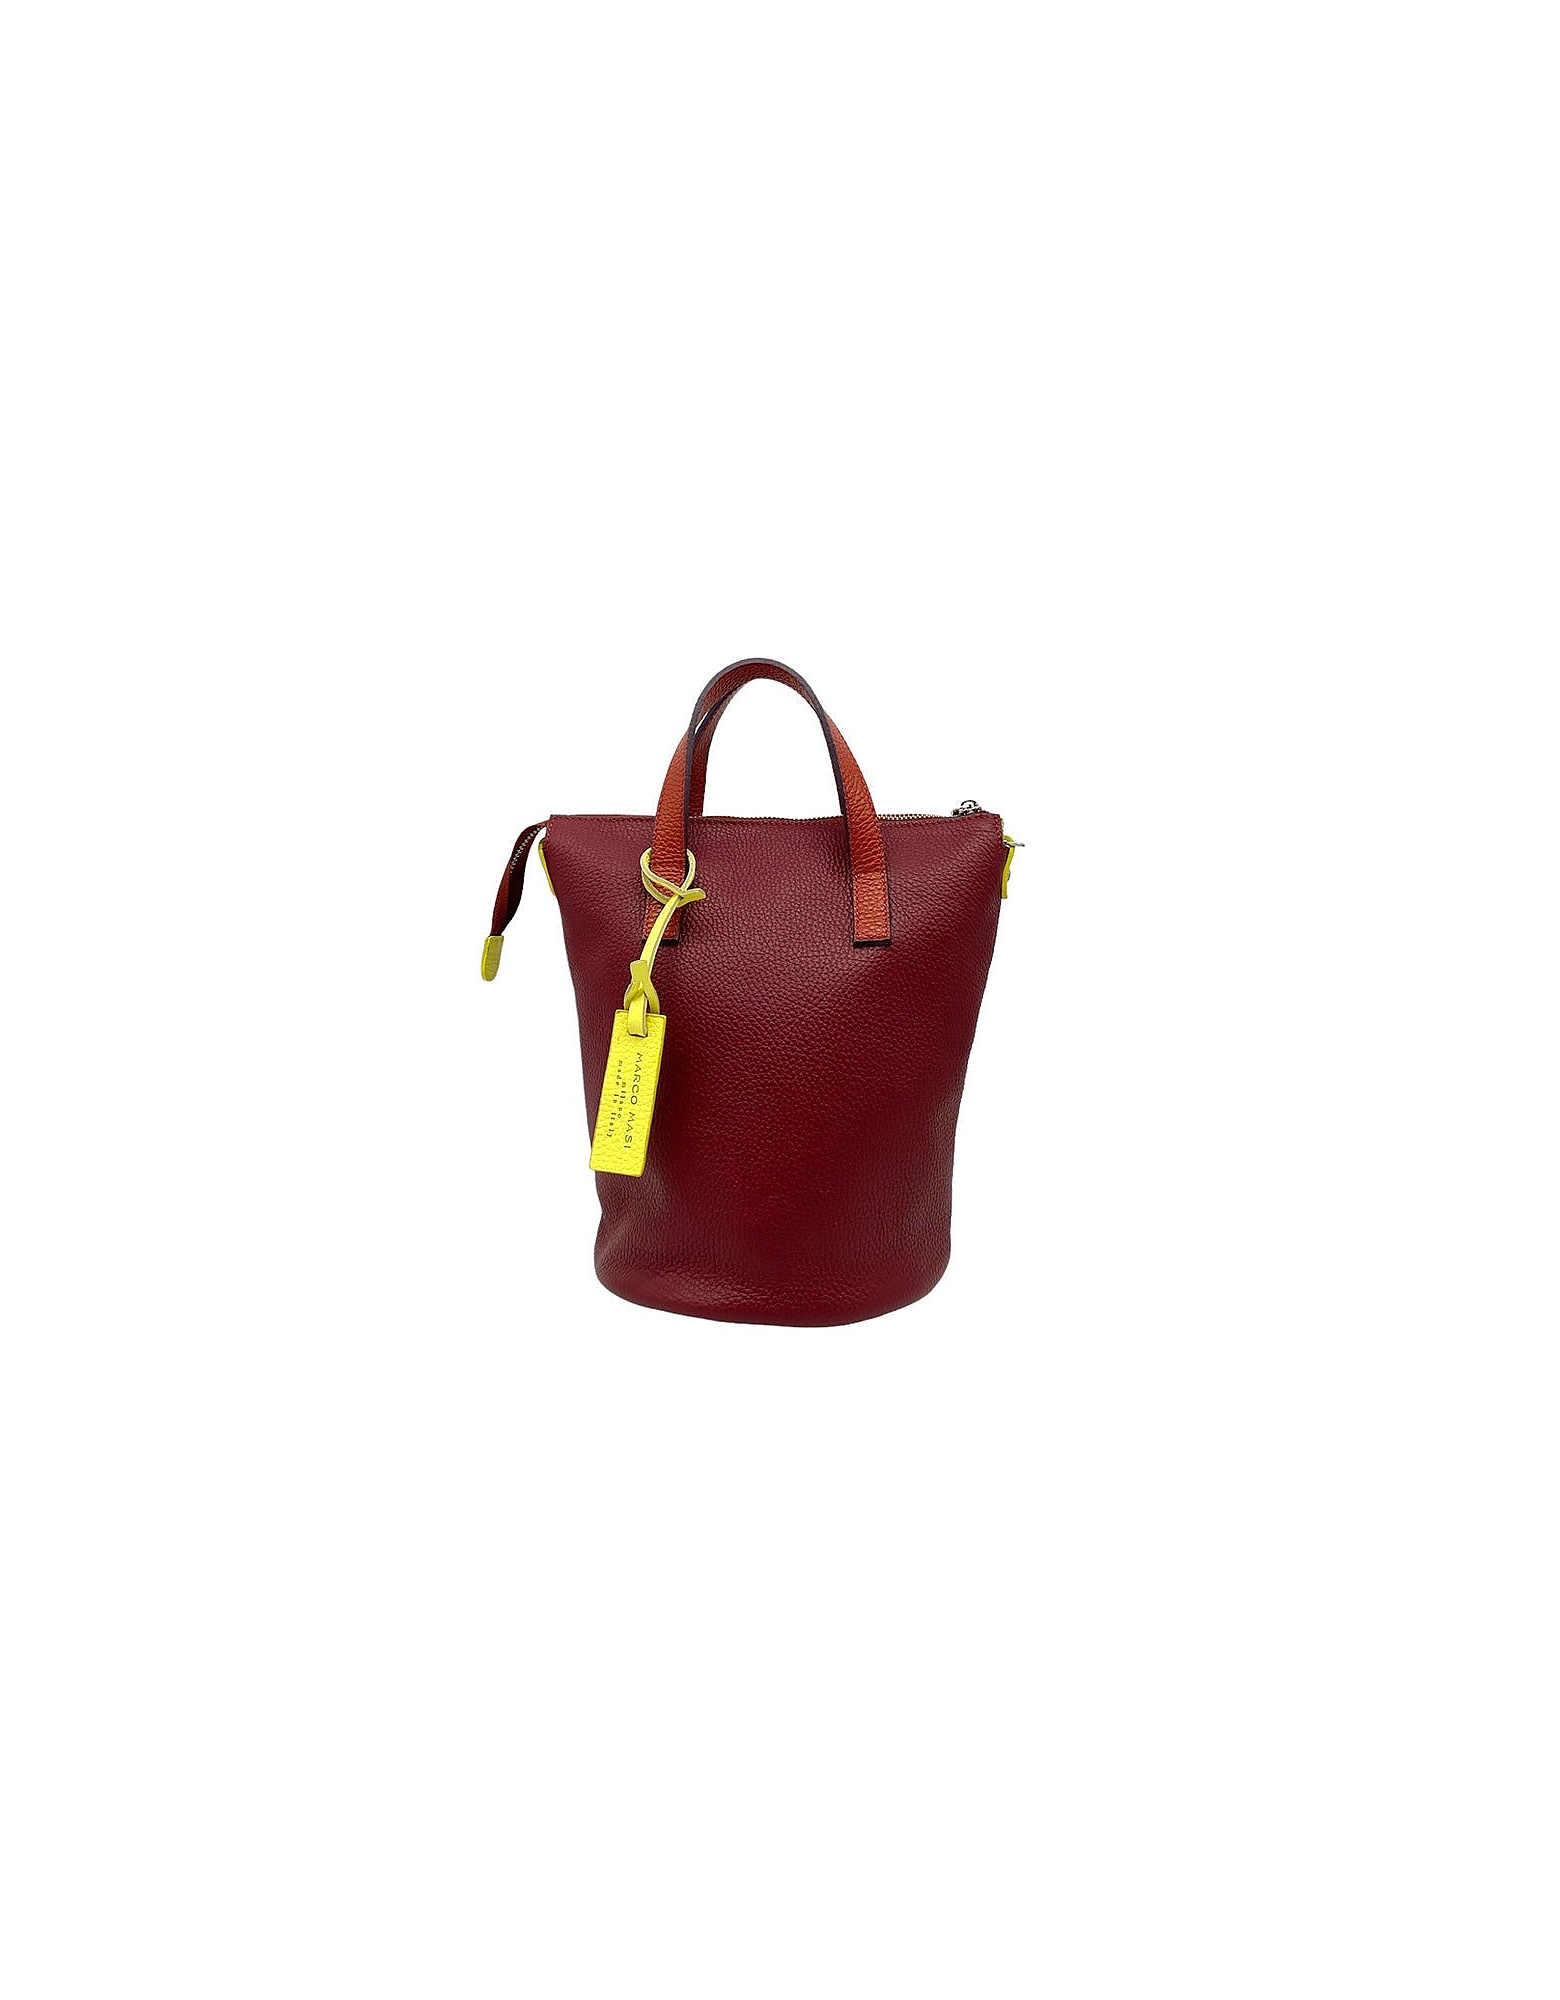 Marco Masi Designer Handbags 3377 - Brandy And Yellow Top Handle Bag In Burgundy